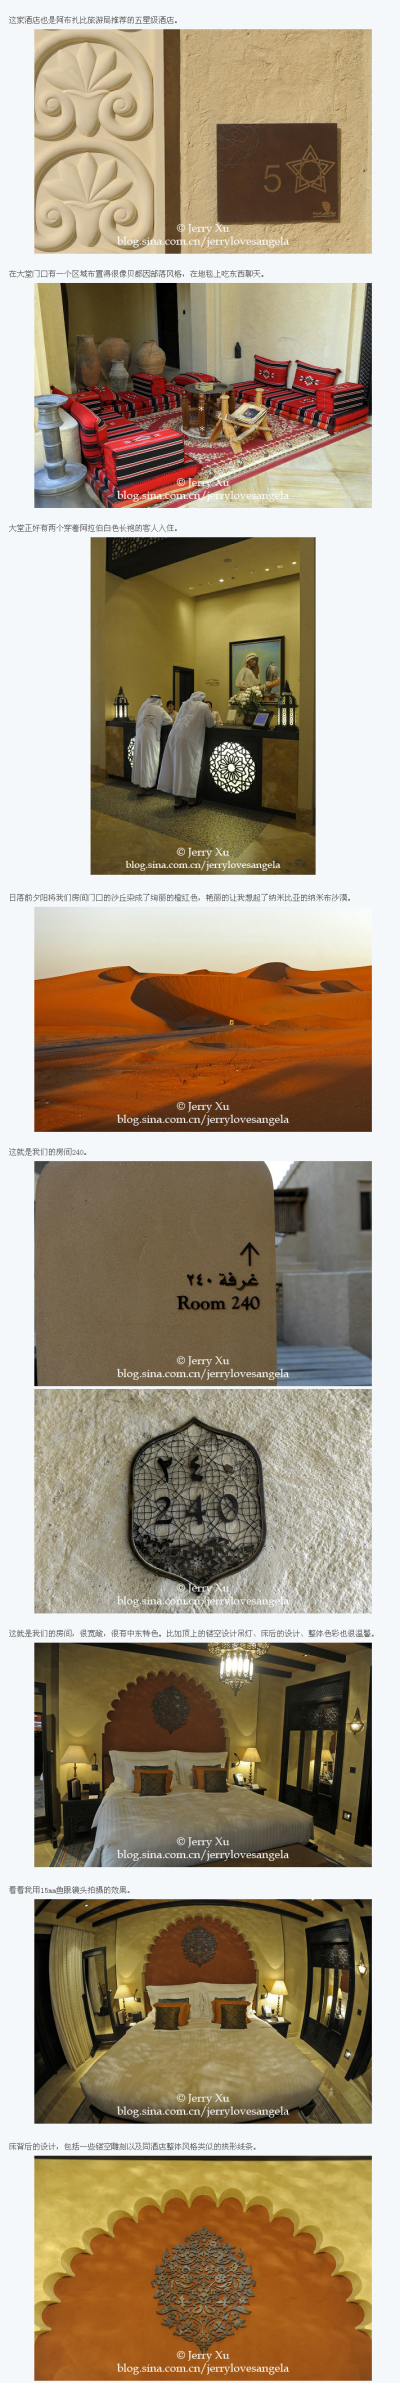 【阿布扎比】沙漠里的中东风情特色豪华酒店 -3